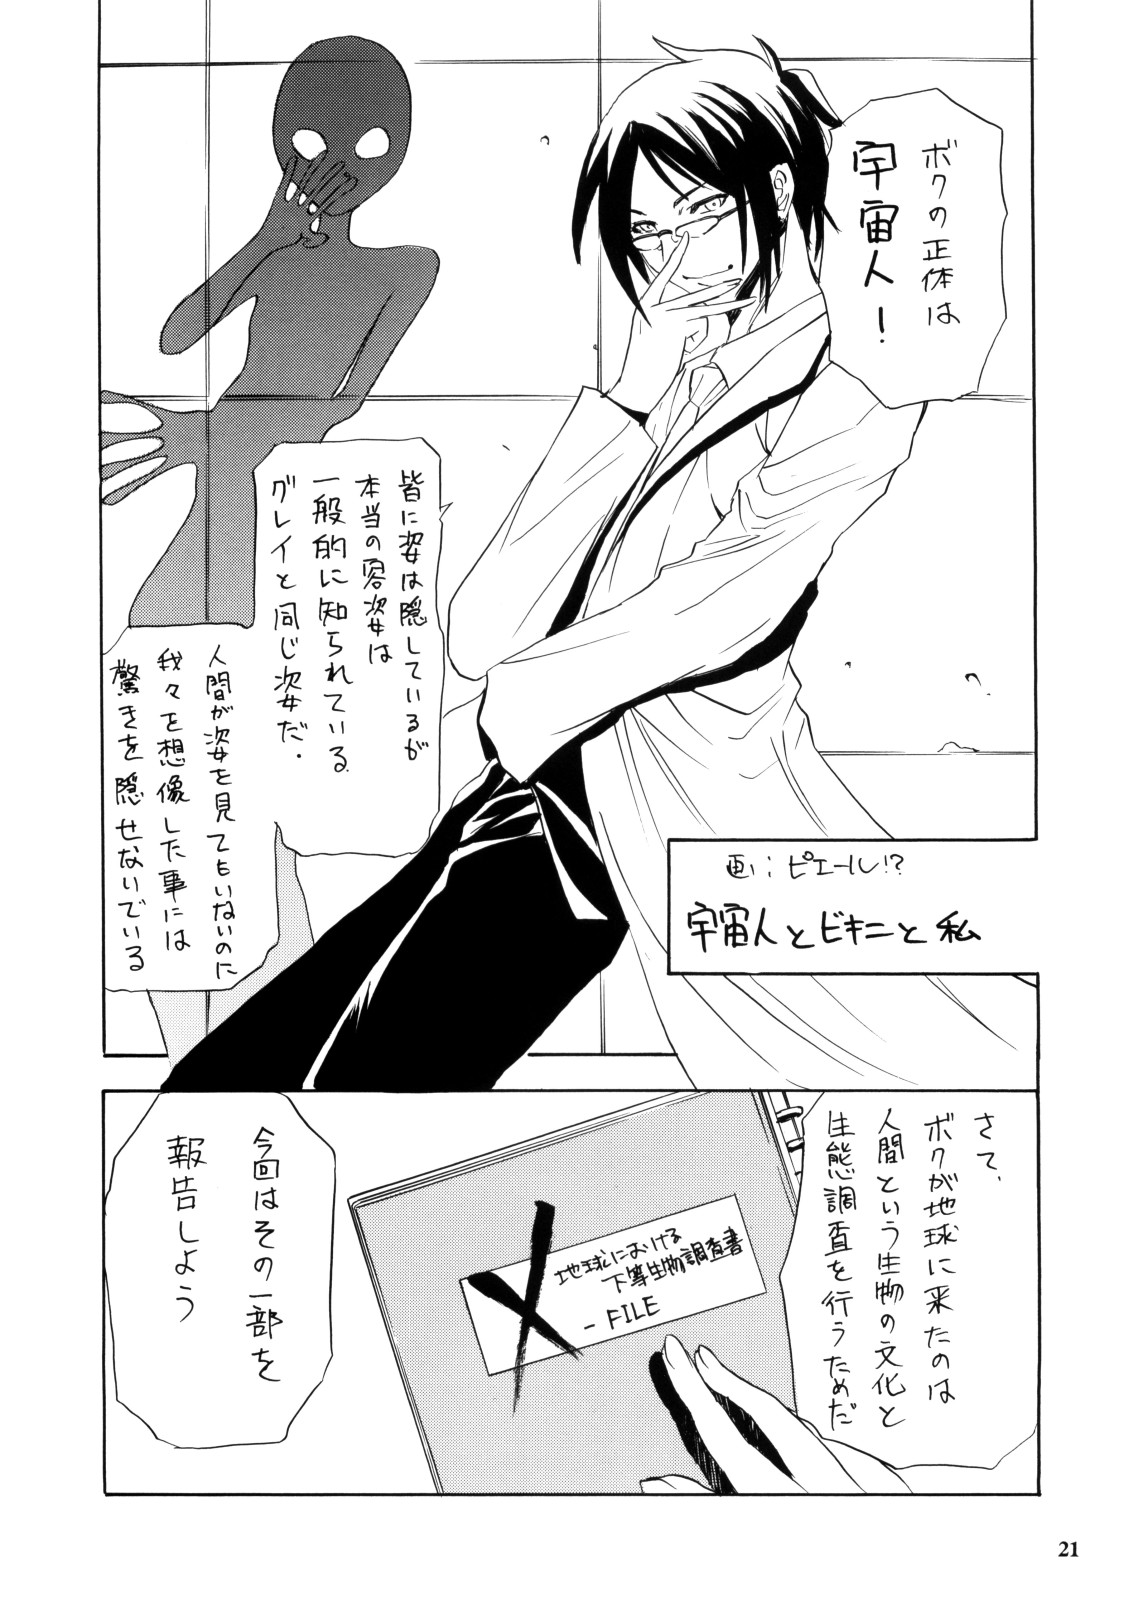 (C74) [NOUZUI MAJUTSU, NO-NO'S (Kawara Keisuke, Kanesada Keishi, NEO'GENTLE)] Let's Bikiniing! page 21 full